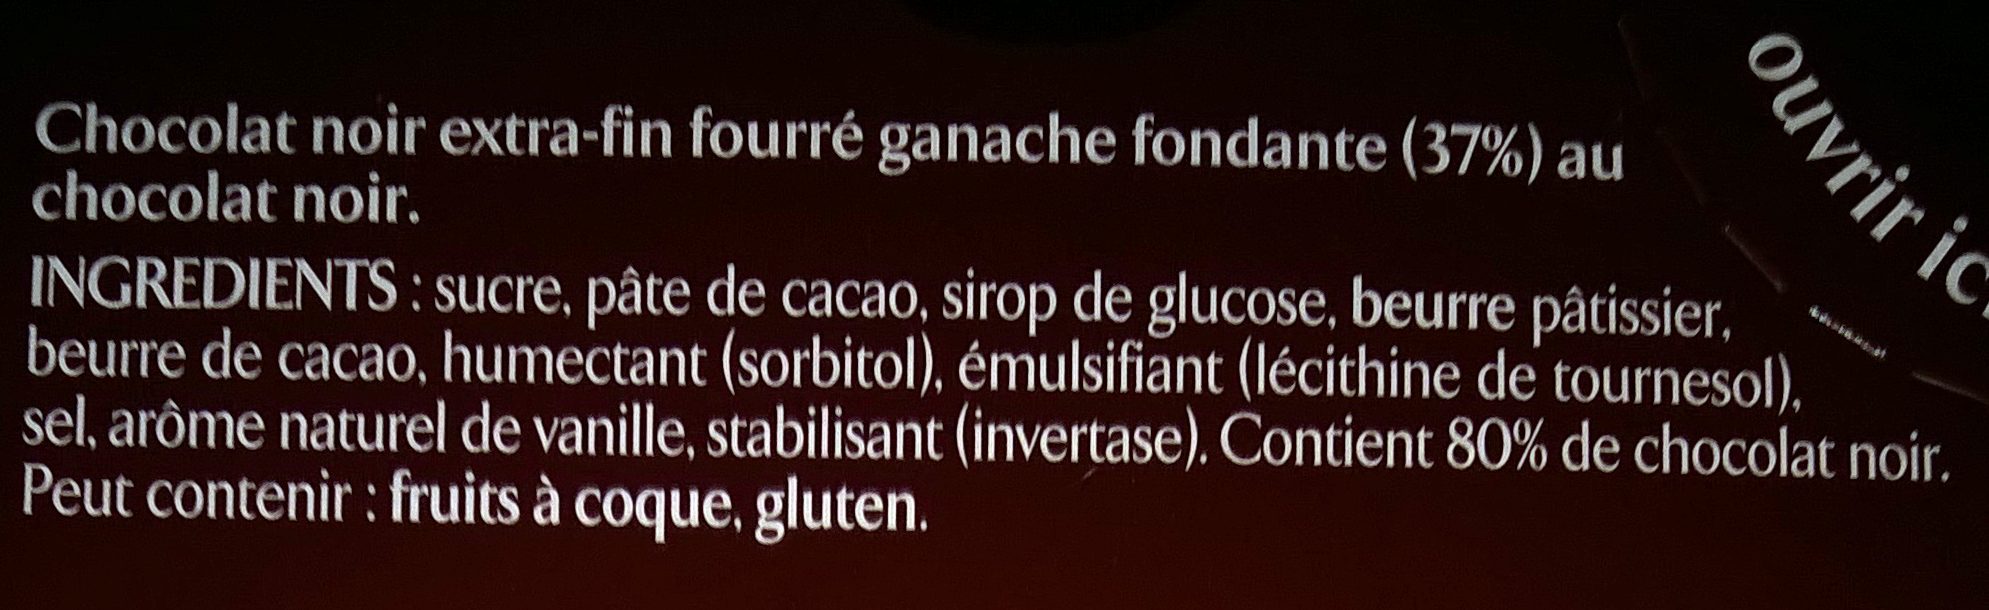 NESTLE L'ATELIER Ganache chocolat noir 150g - Ingredients - fr